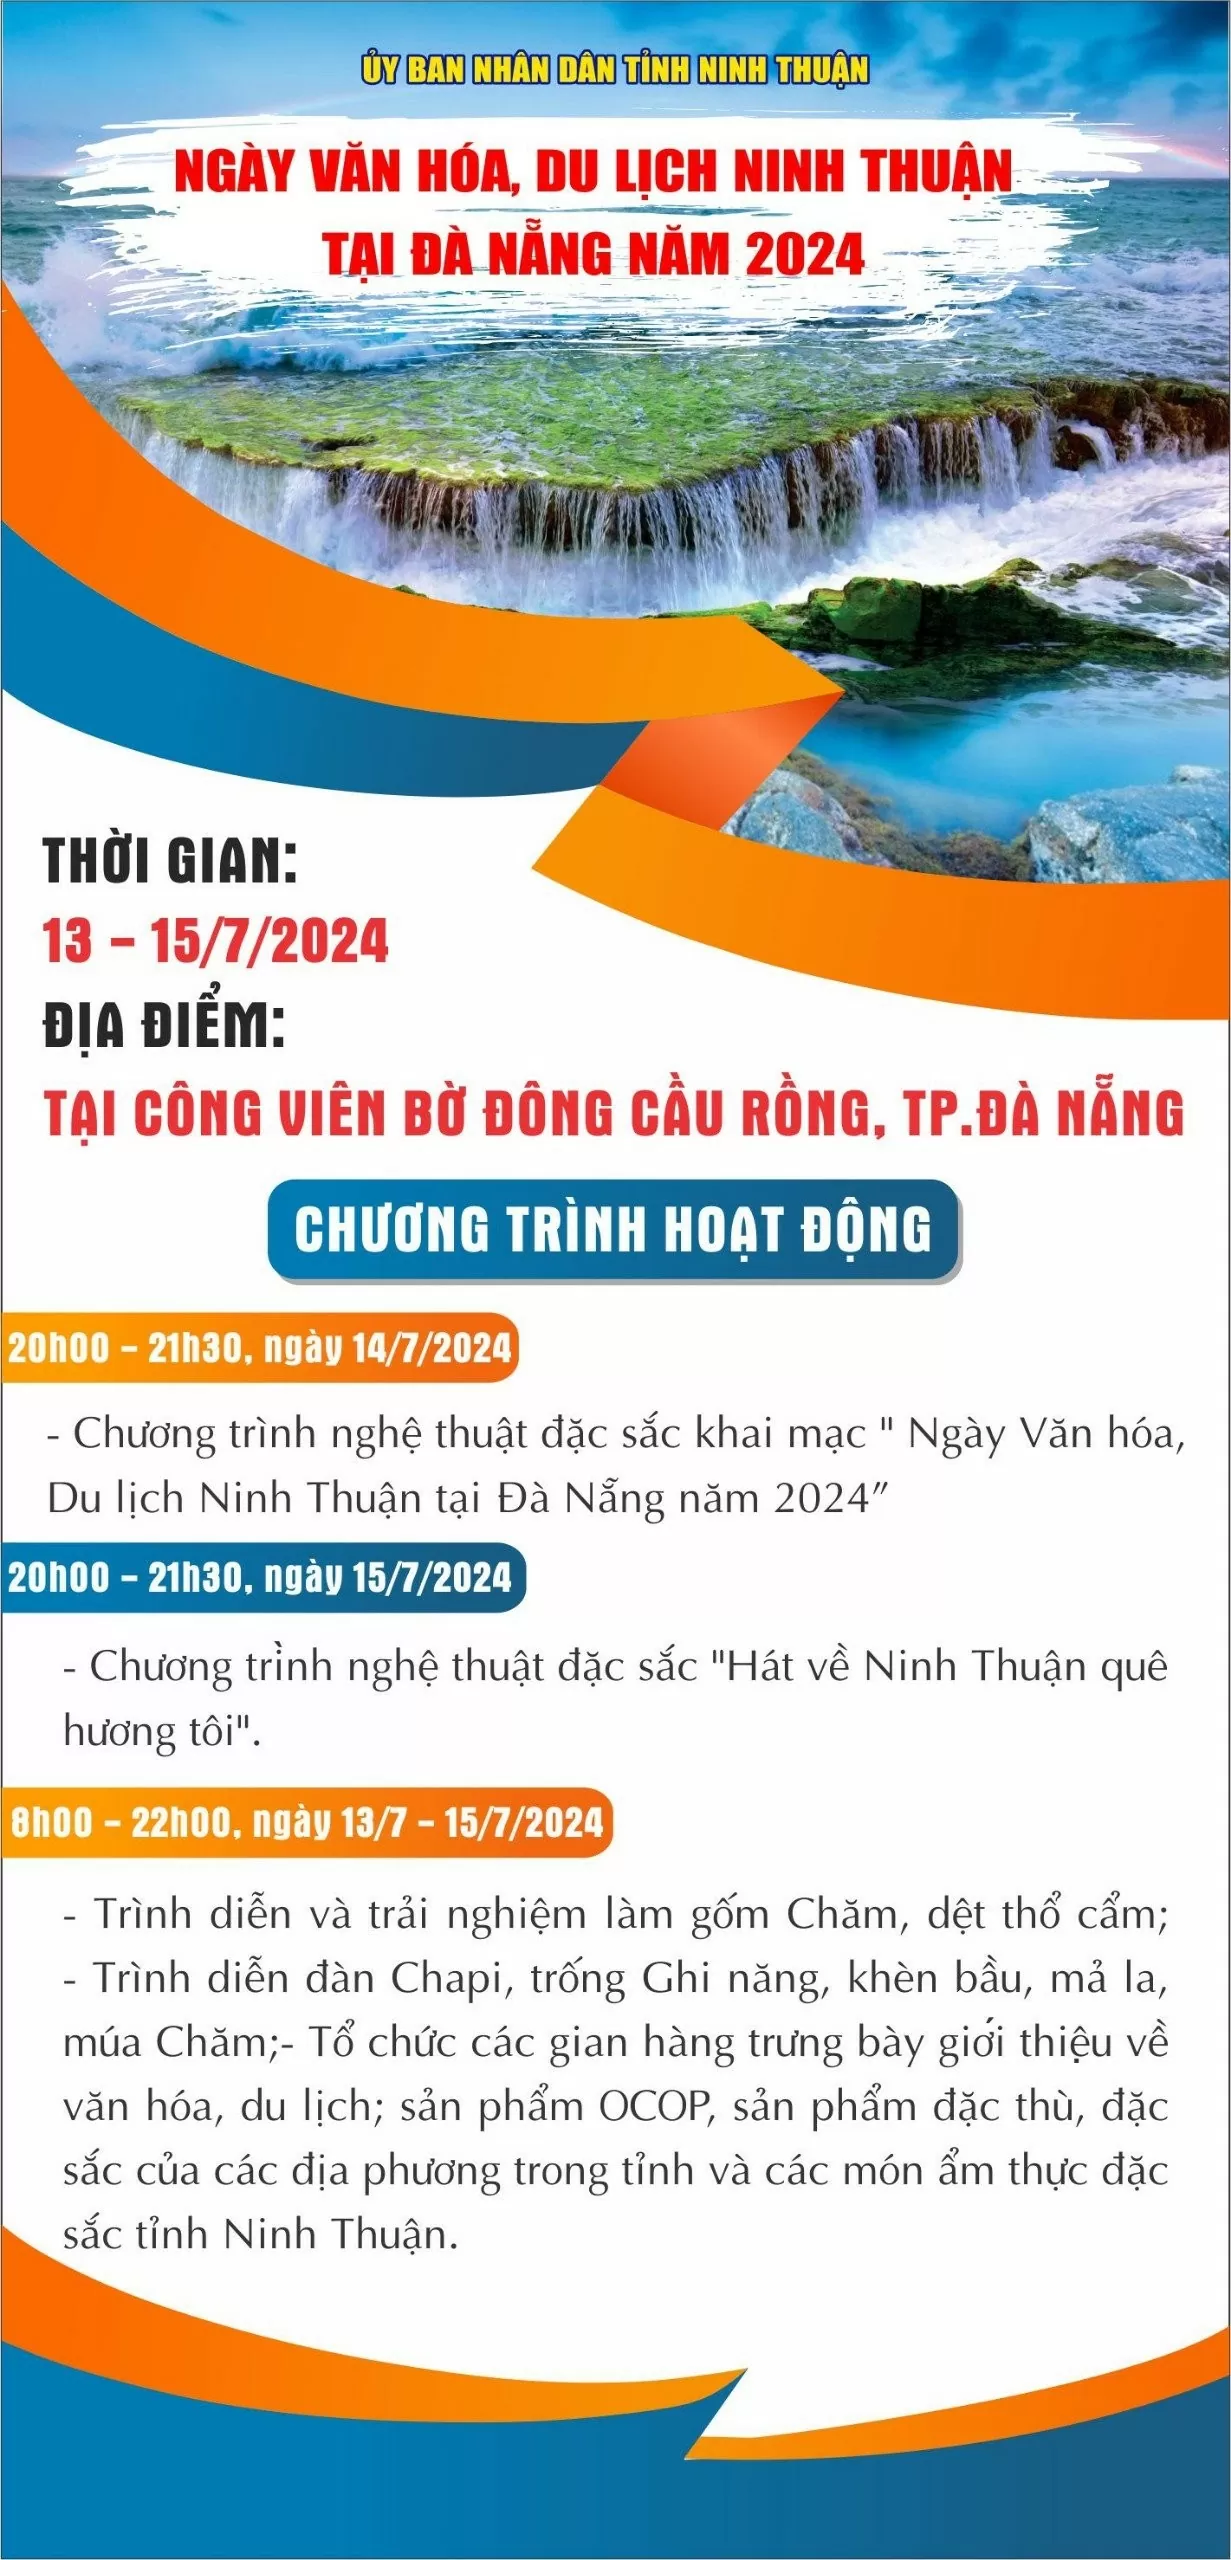 Quảng bá văn hóa, du lịch Ninh Thuận tại Đà Nẵng